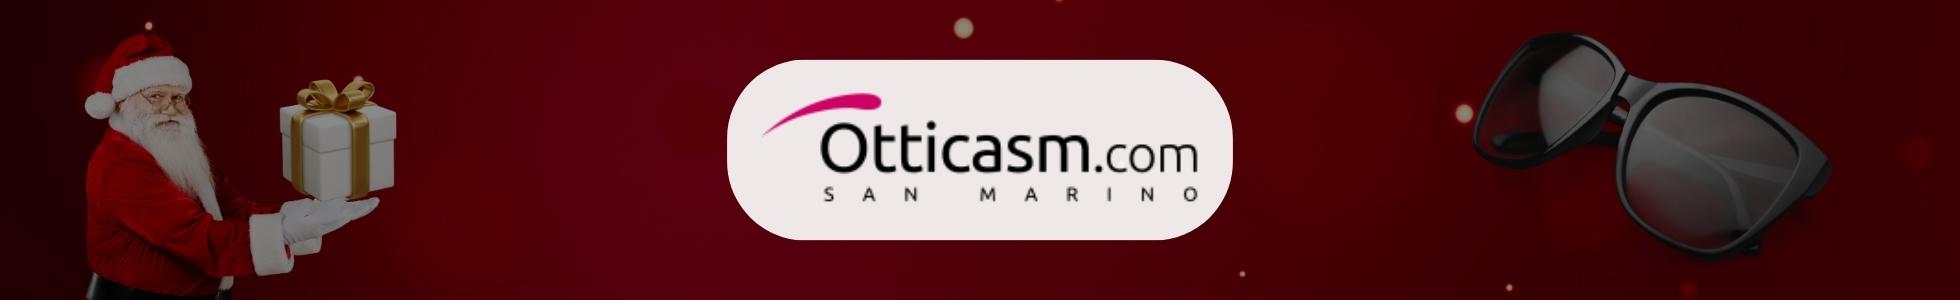 OtticaSm.com - Shop online occhiali